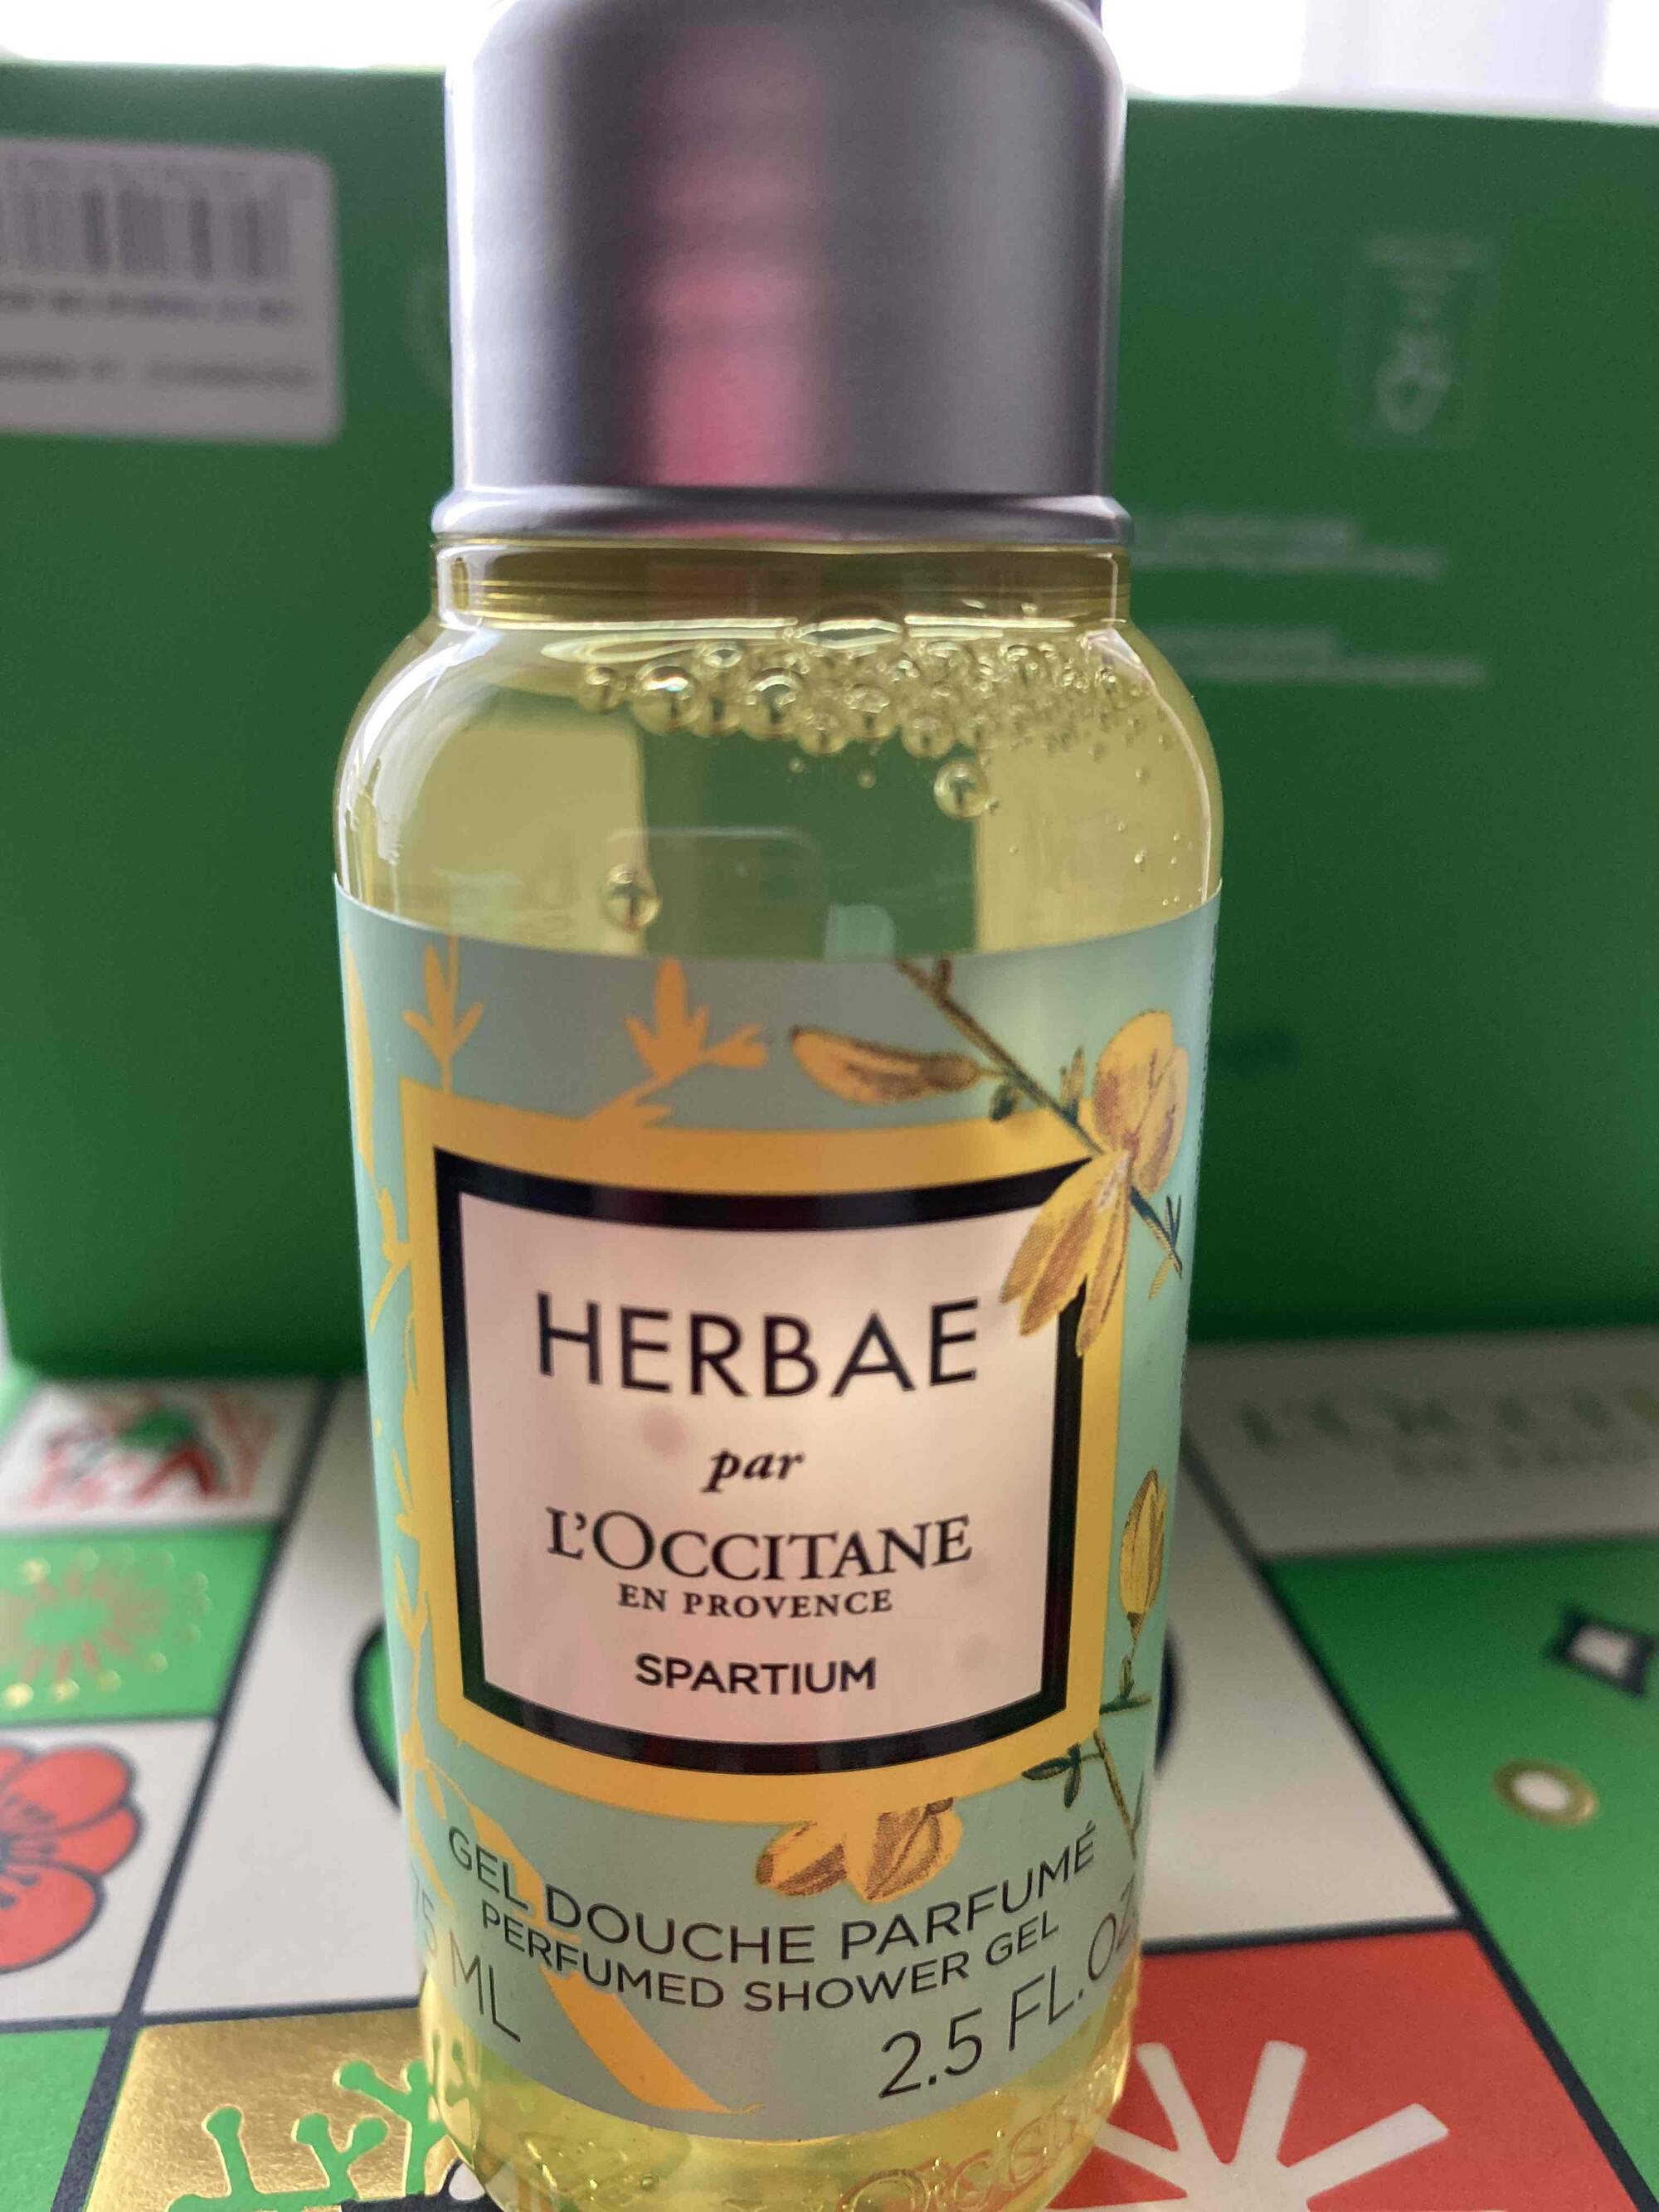 L'OCCITANE EN PROVENCE - Herbae - Gel douche parfumé 